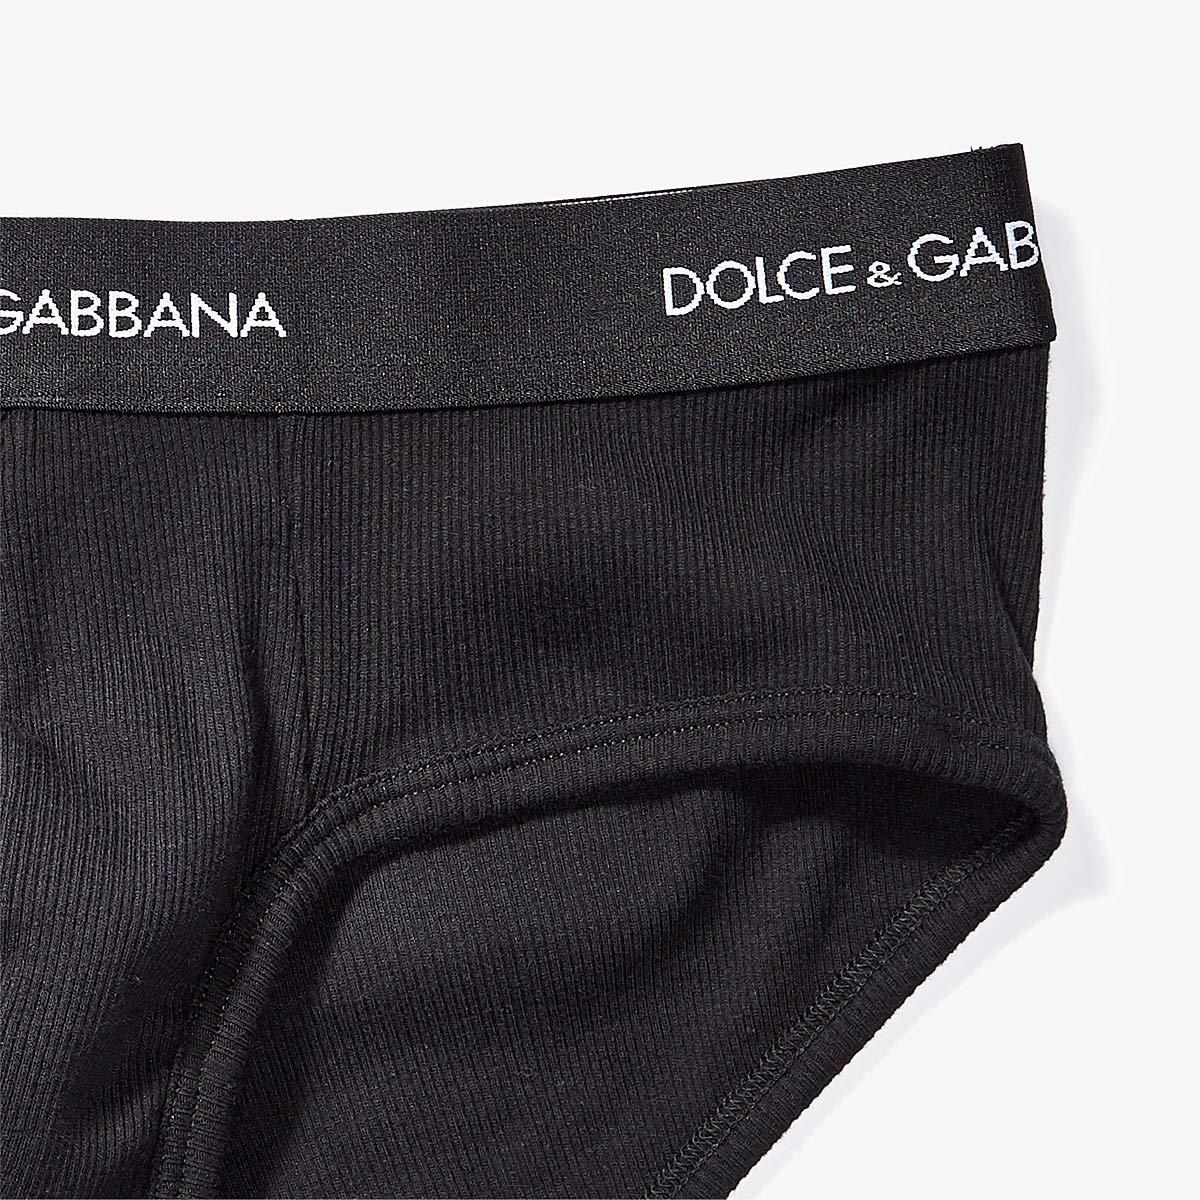 Ivory Dolce & Gabbana Walking Canes Print Men's Brando Brief 